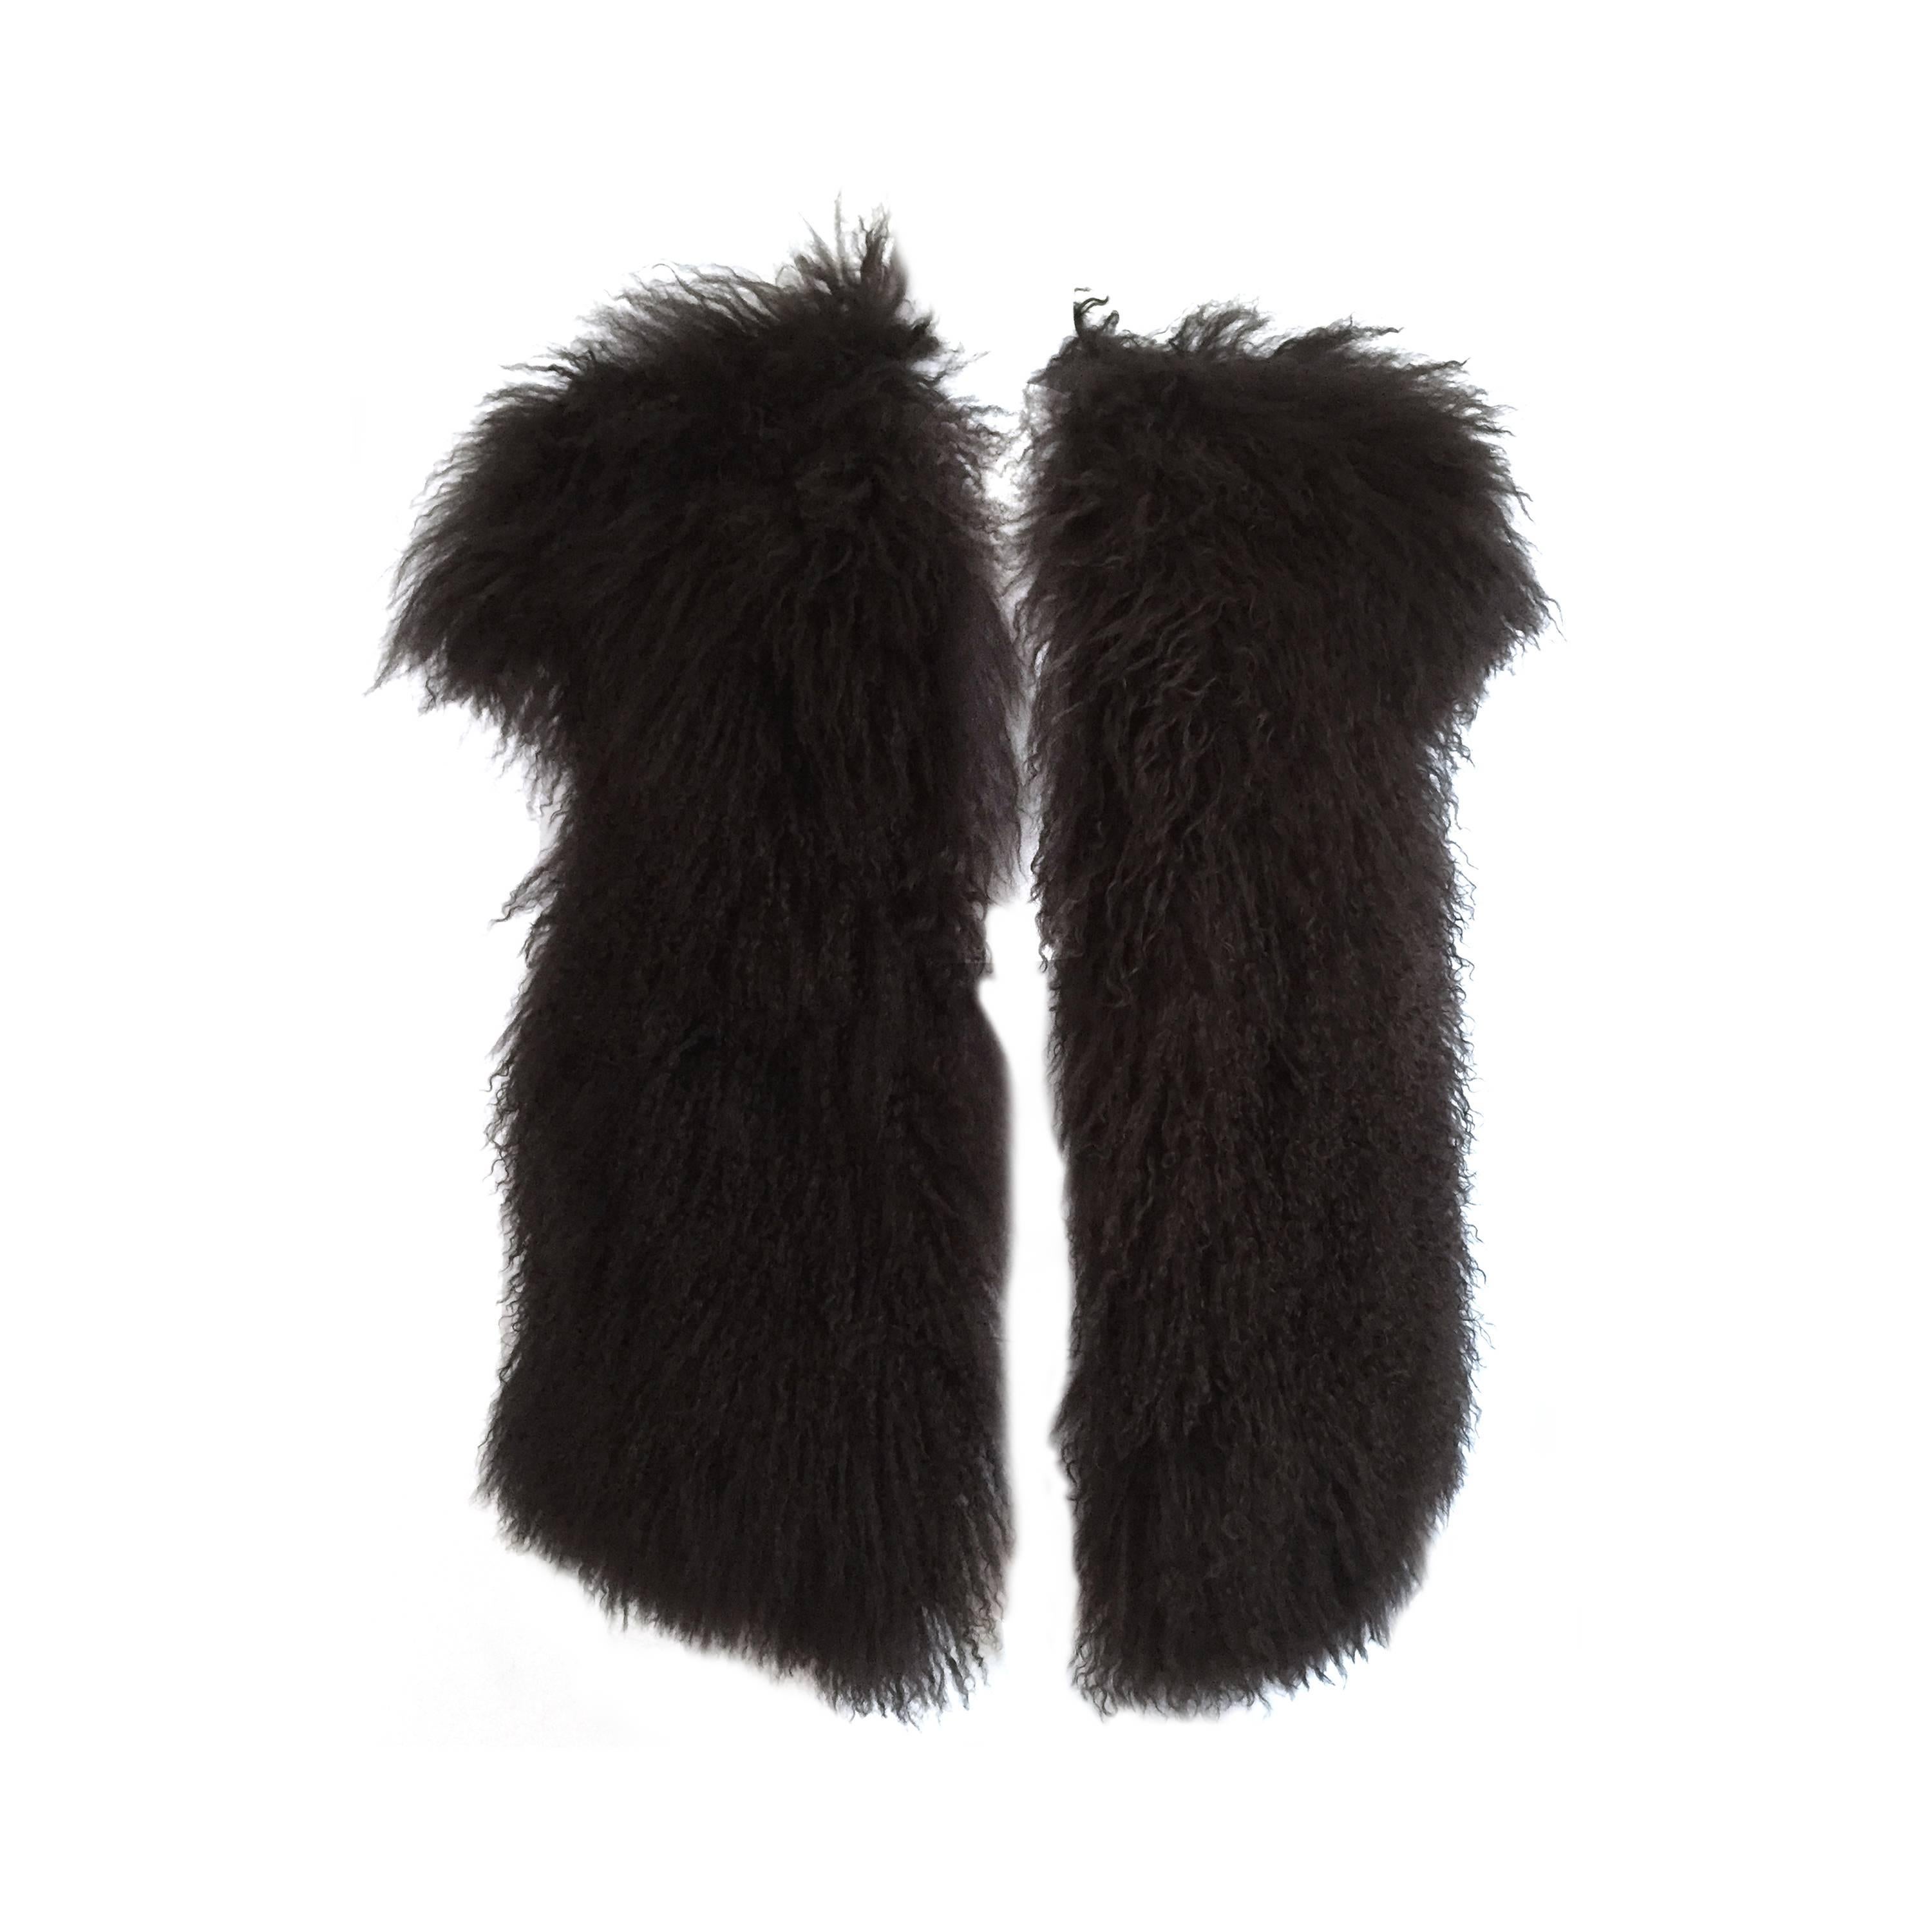 Sonia Rykiel Mongolian Fur Vest Size 6 / 8. 